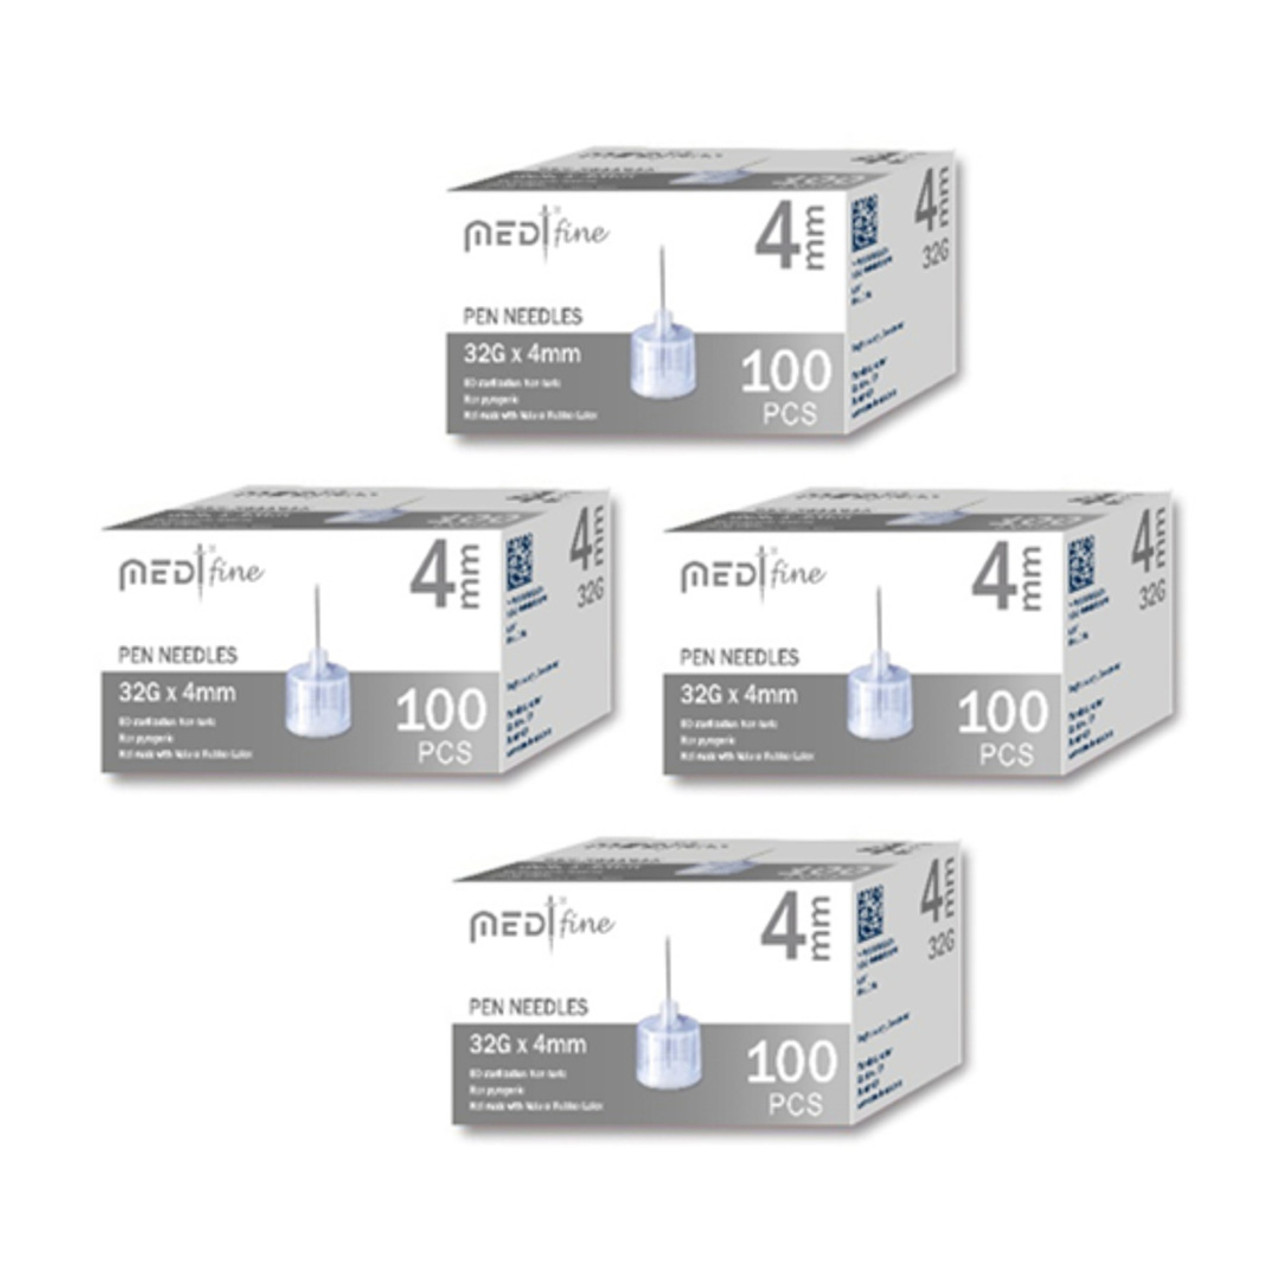 Carelife USA MedtFine Diabetes Pen Needles (31g 8mm) - 400 Pieces